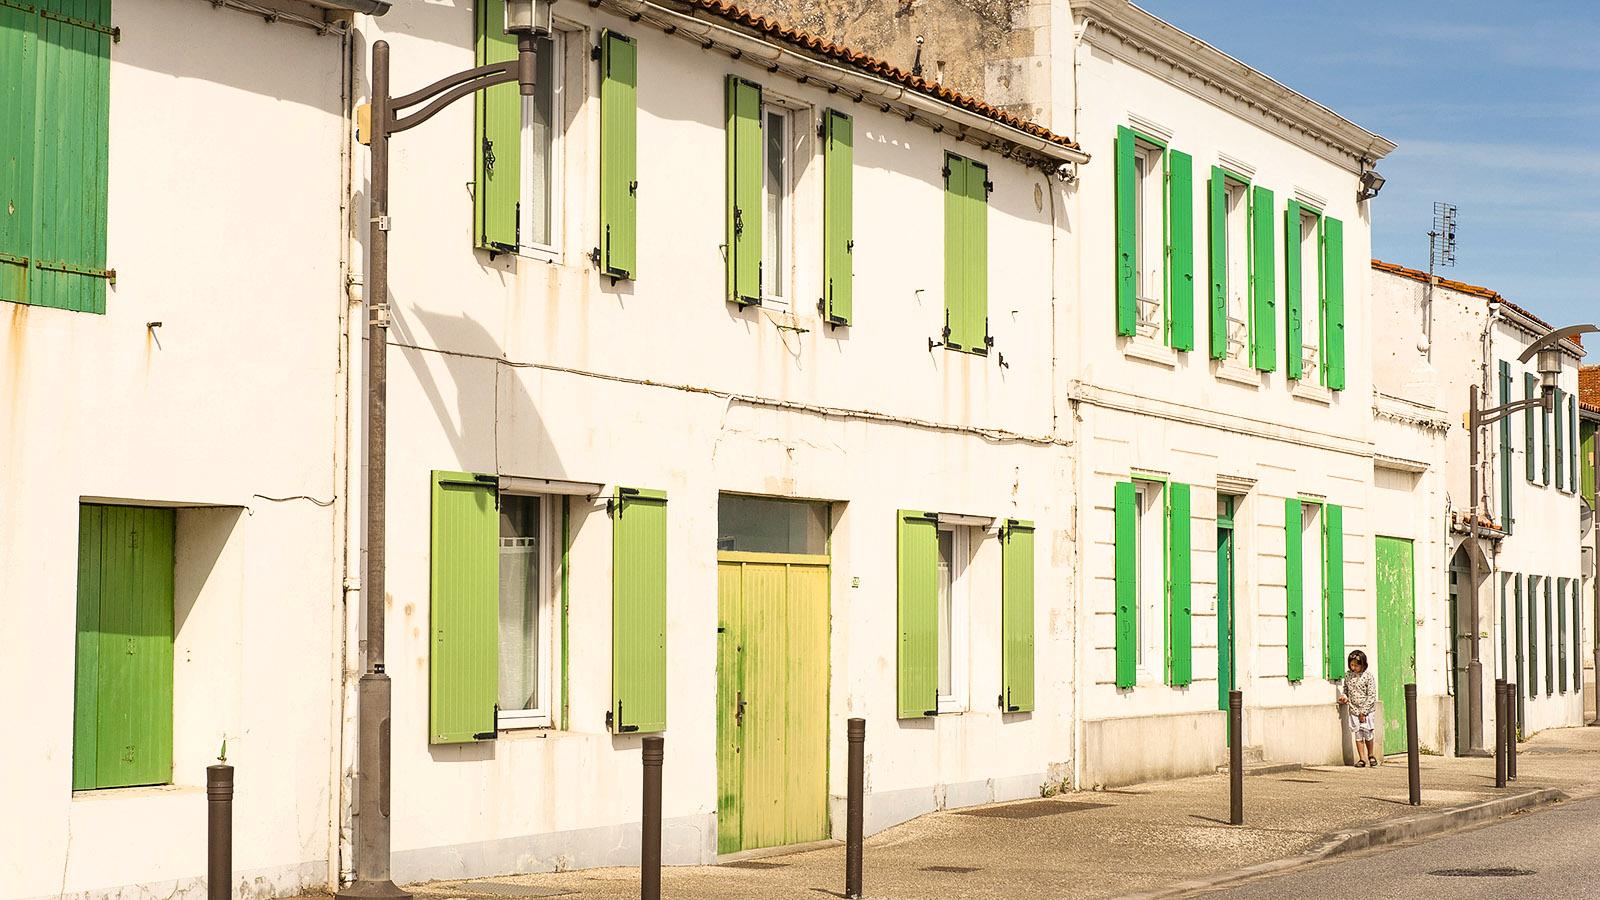 Weiß und grün: die Farben der Inselhäuser auf der Île de Ré - hier in Rivedoux. Foto: Hilke Maunder